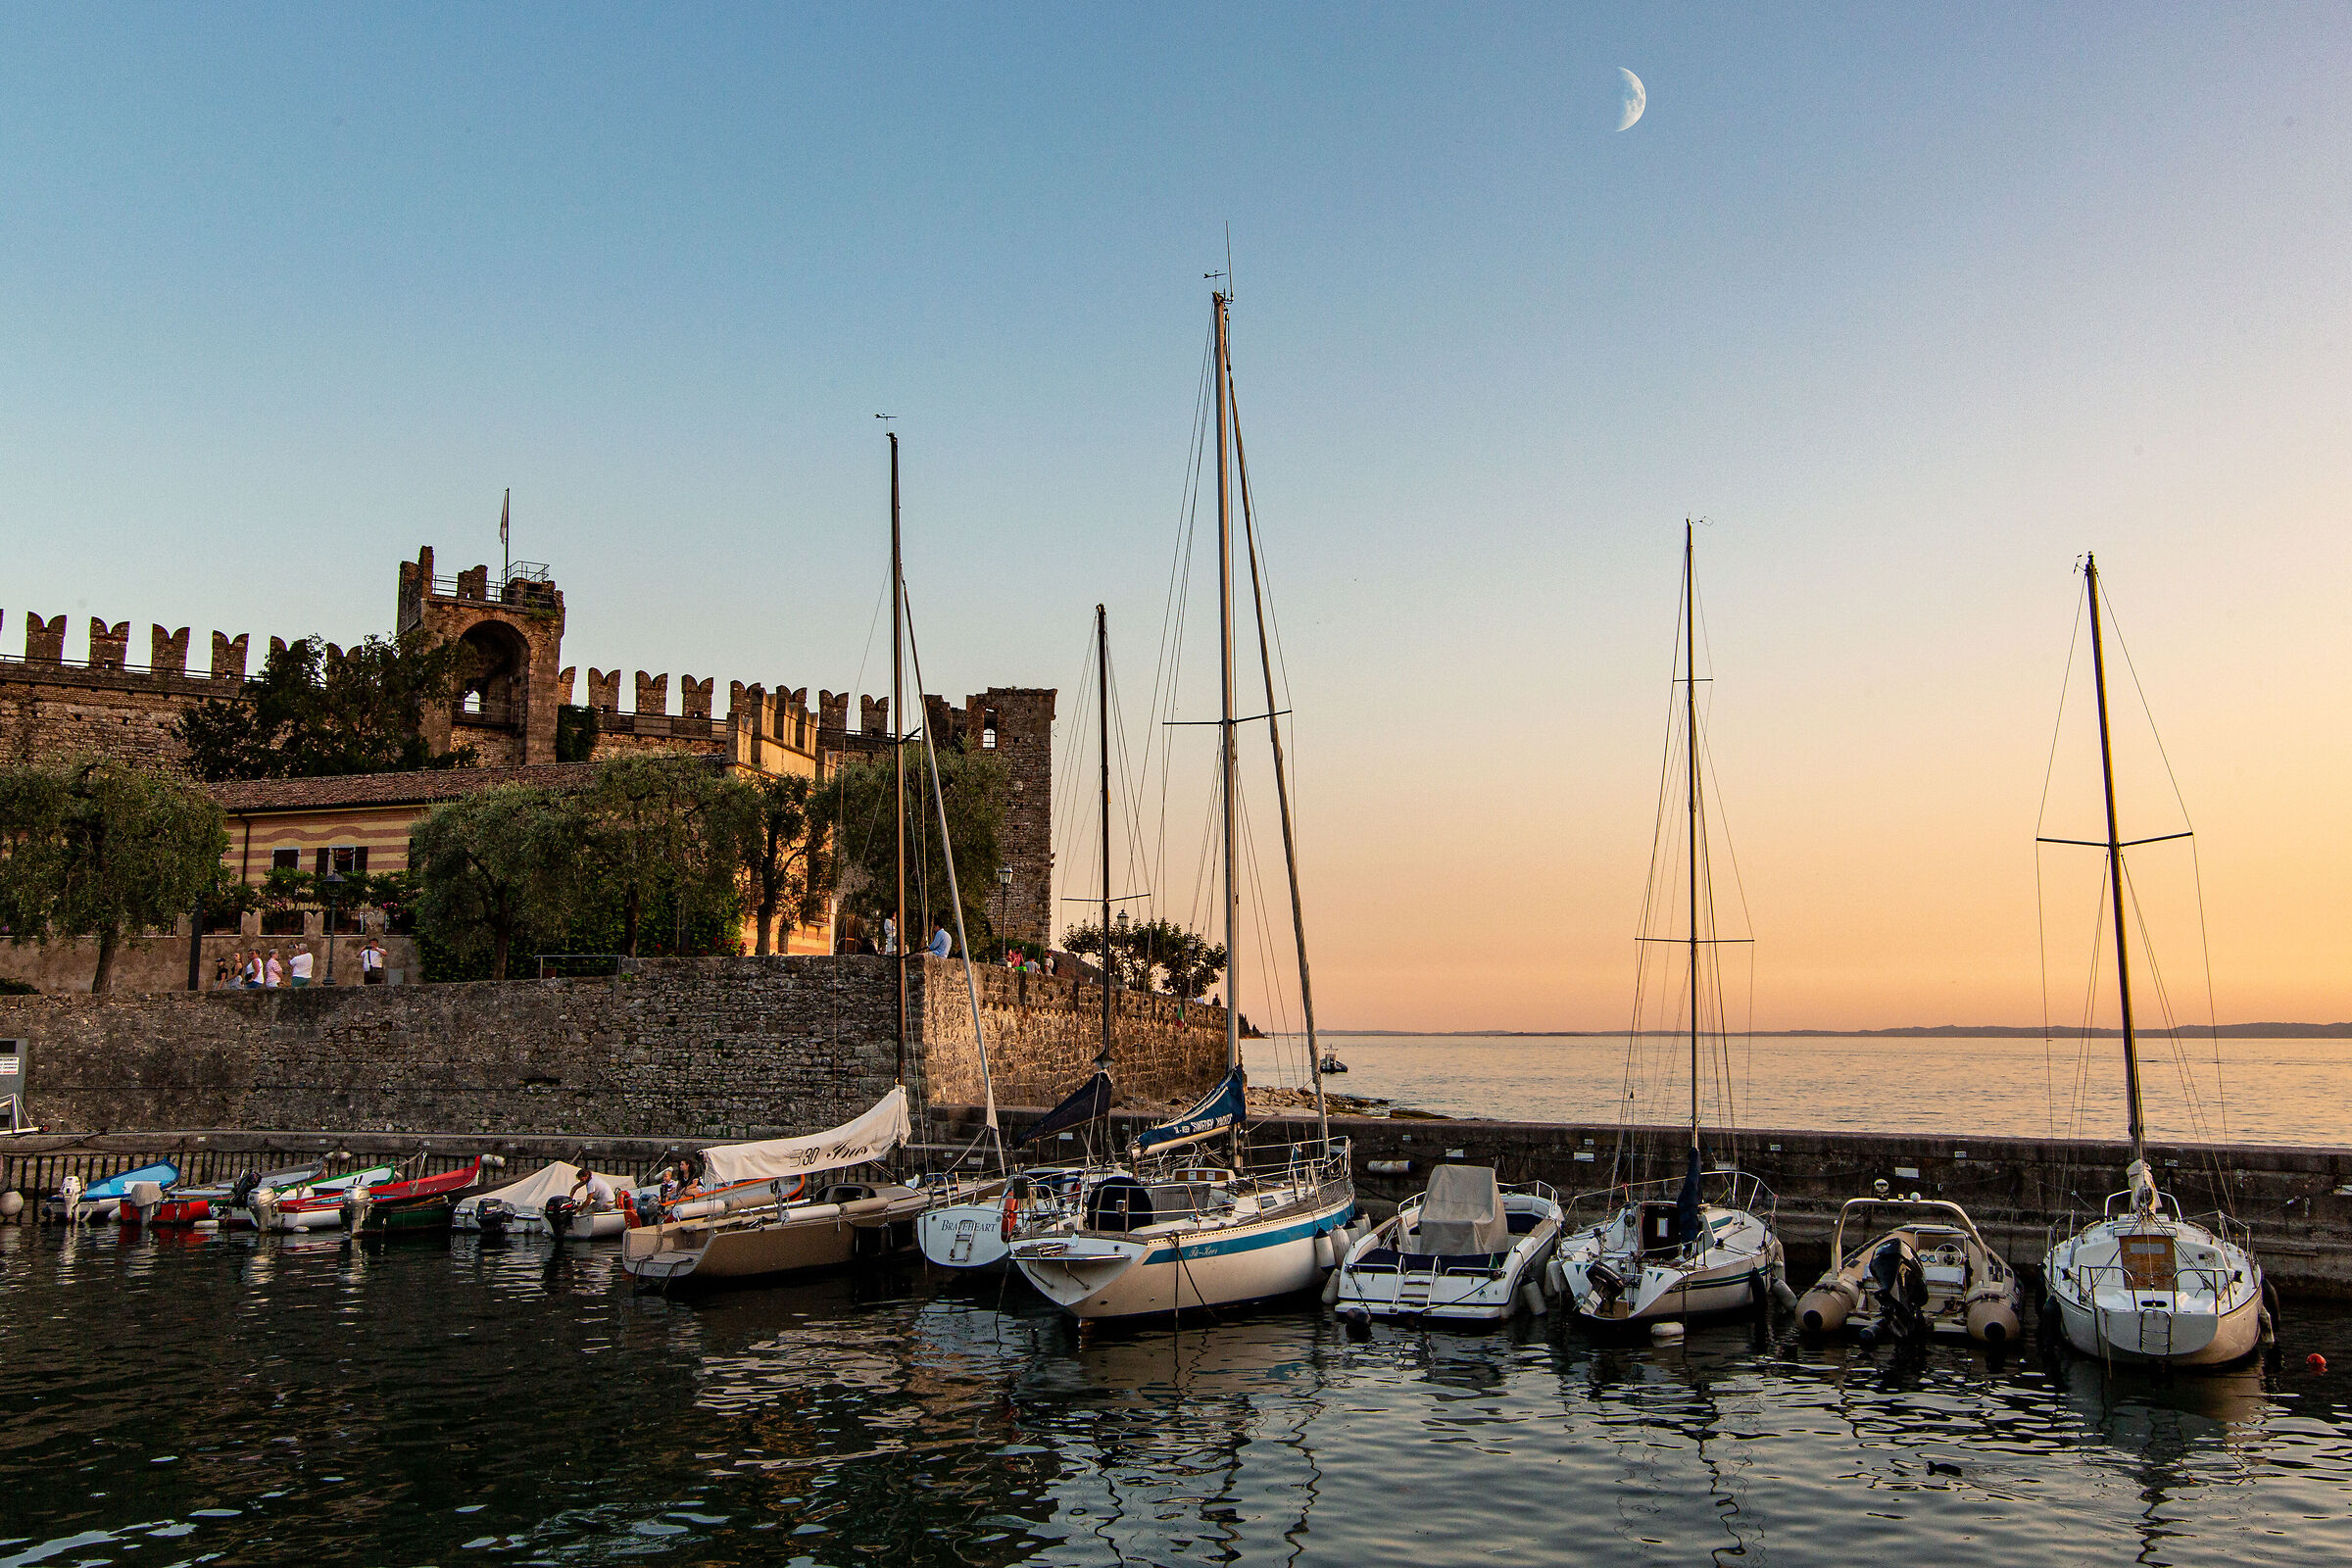 Moon and Scaliger castle in Torri del Benaco...